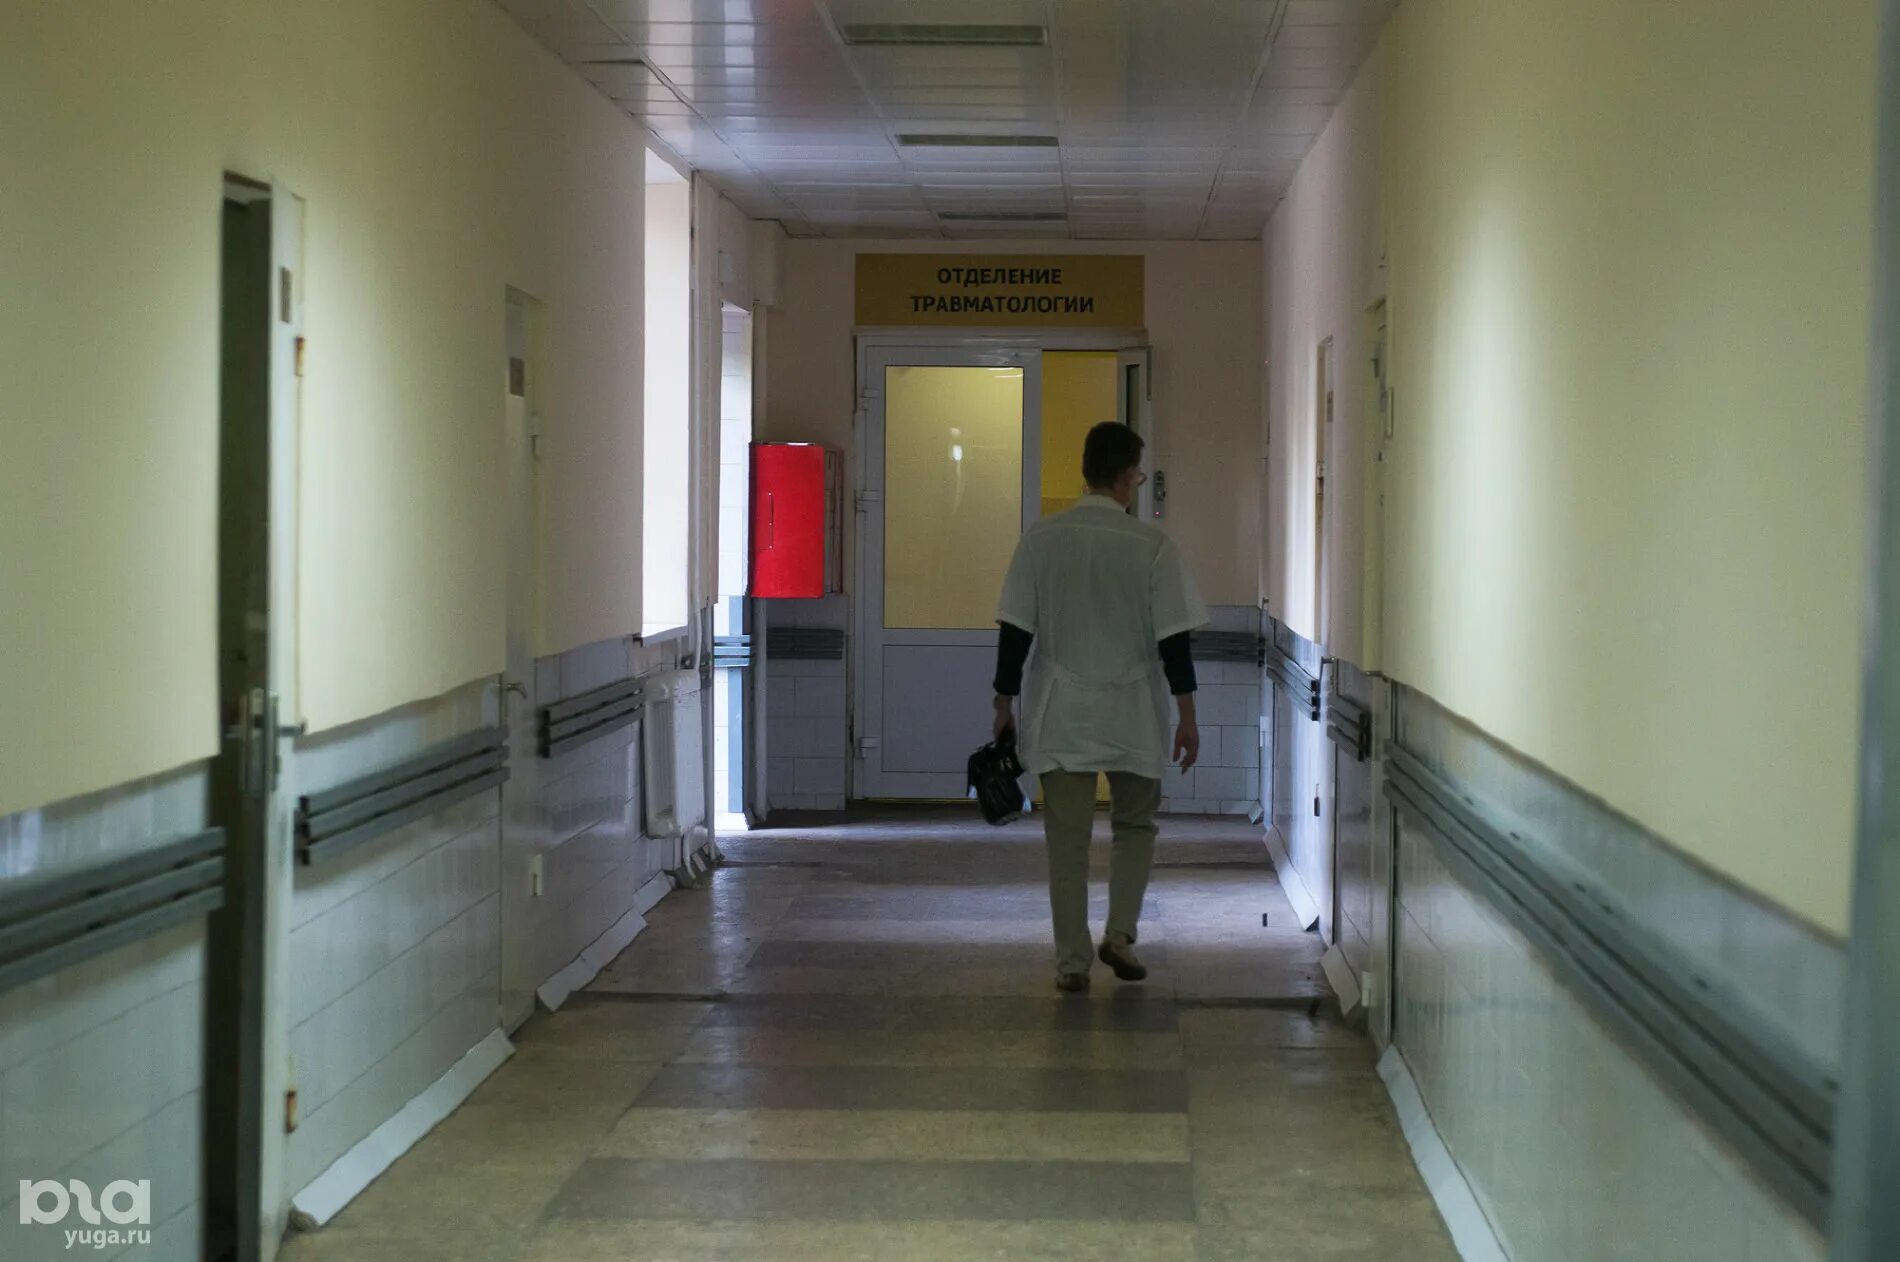 Больничный коридор. Краснодарская Центральная больница. Коридор поликлиники в Краснодаре. Коридоры больницы скорая. Специализированная психиатрическая больница краснодар